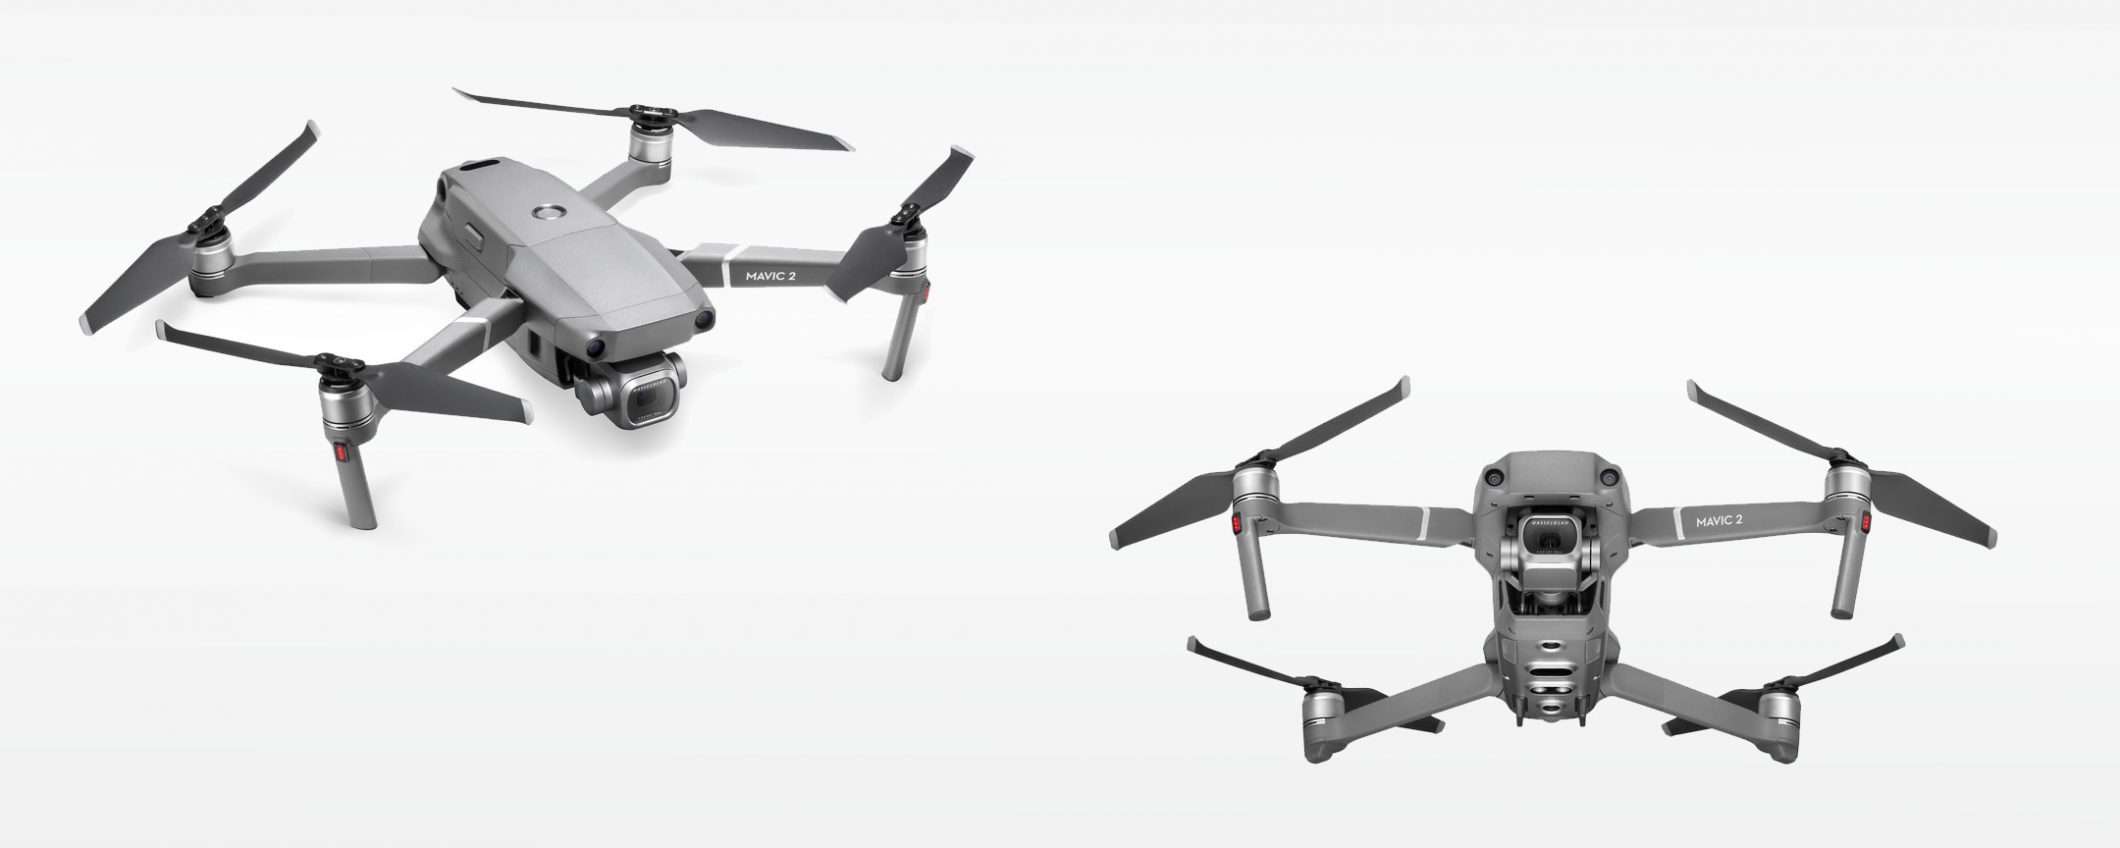 Corso per pilotare droni: ecco l'offerta DJI